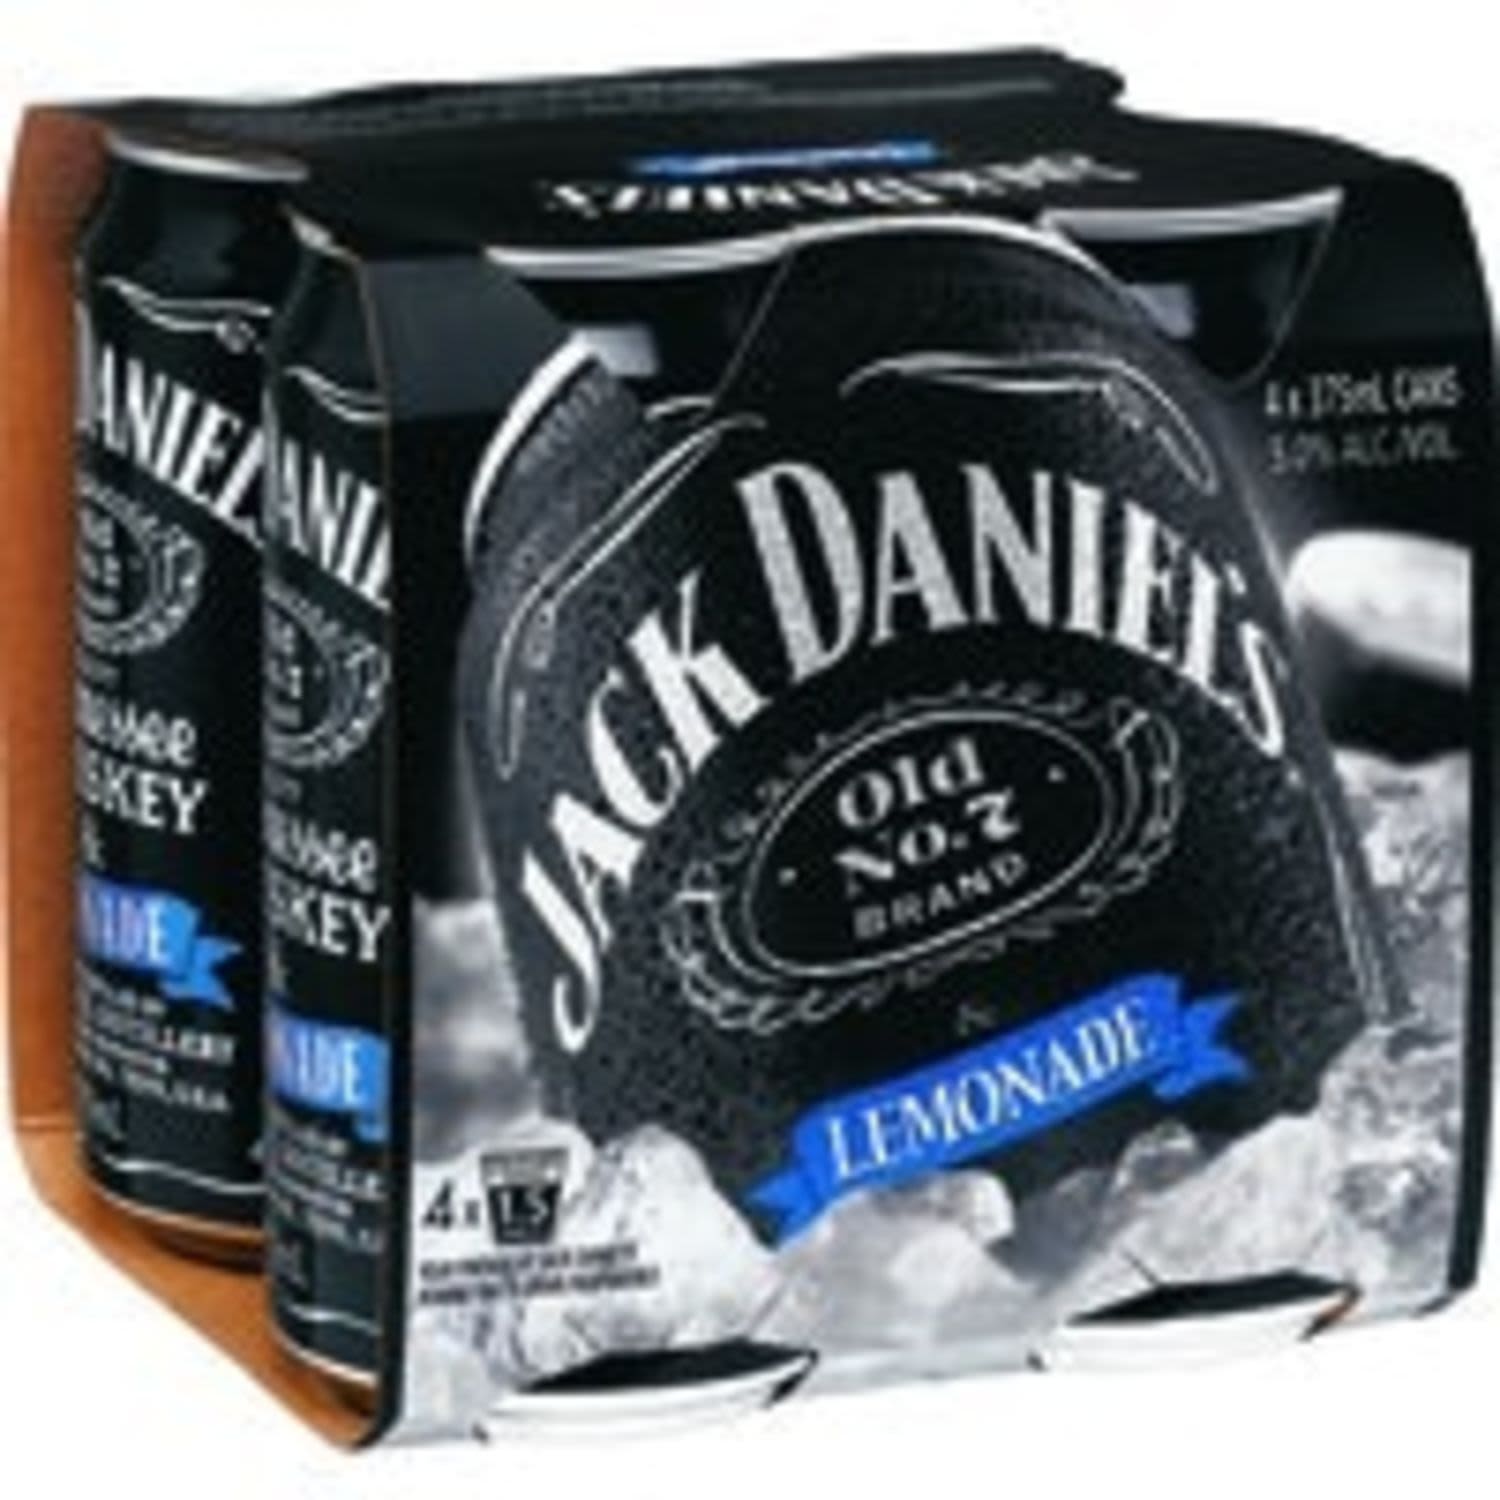 Jack Daniel's & Lemonade Can 375mL 4 Pack